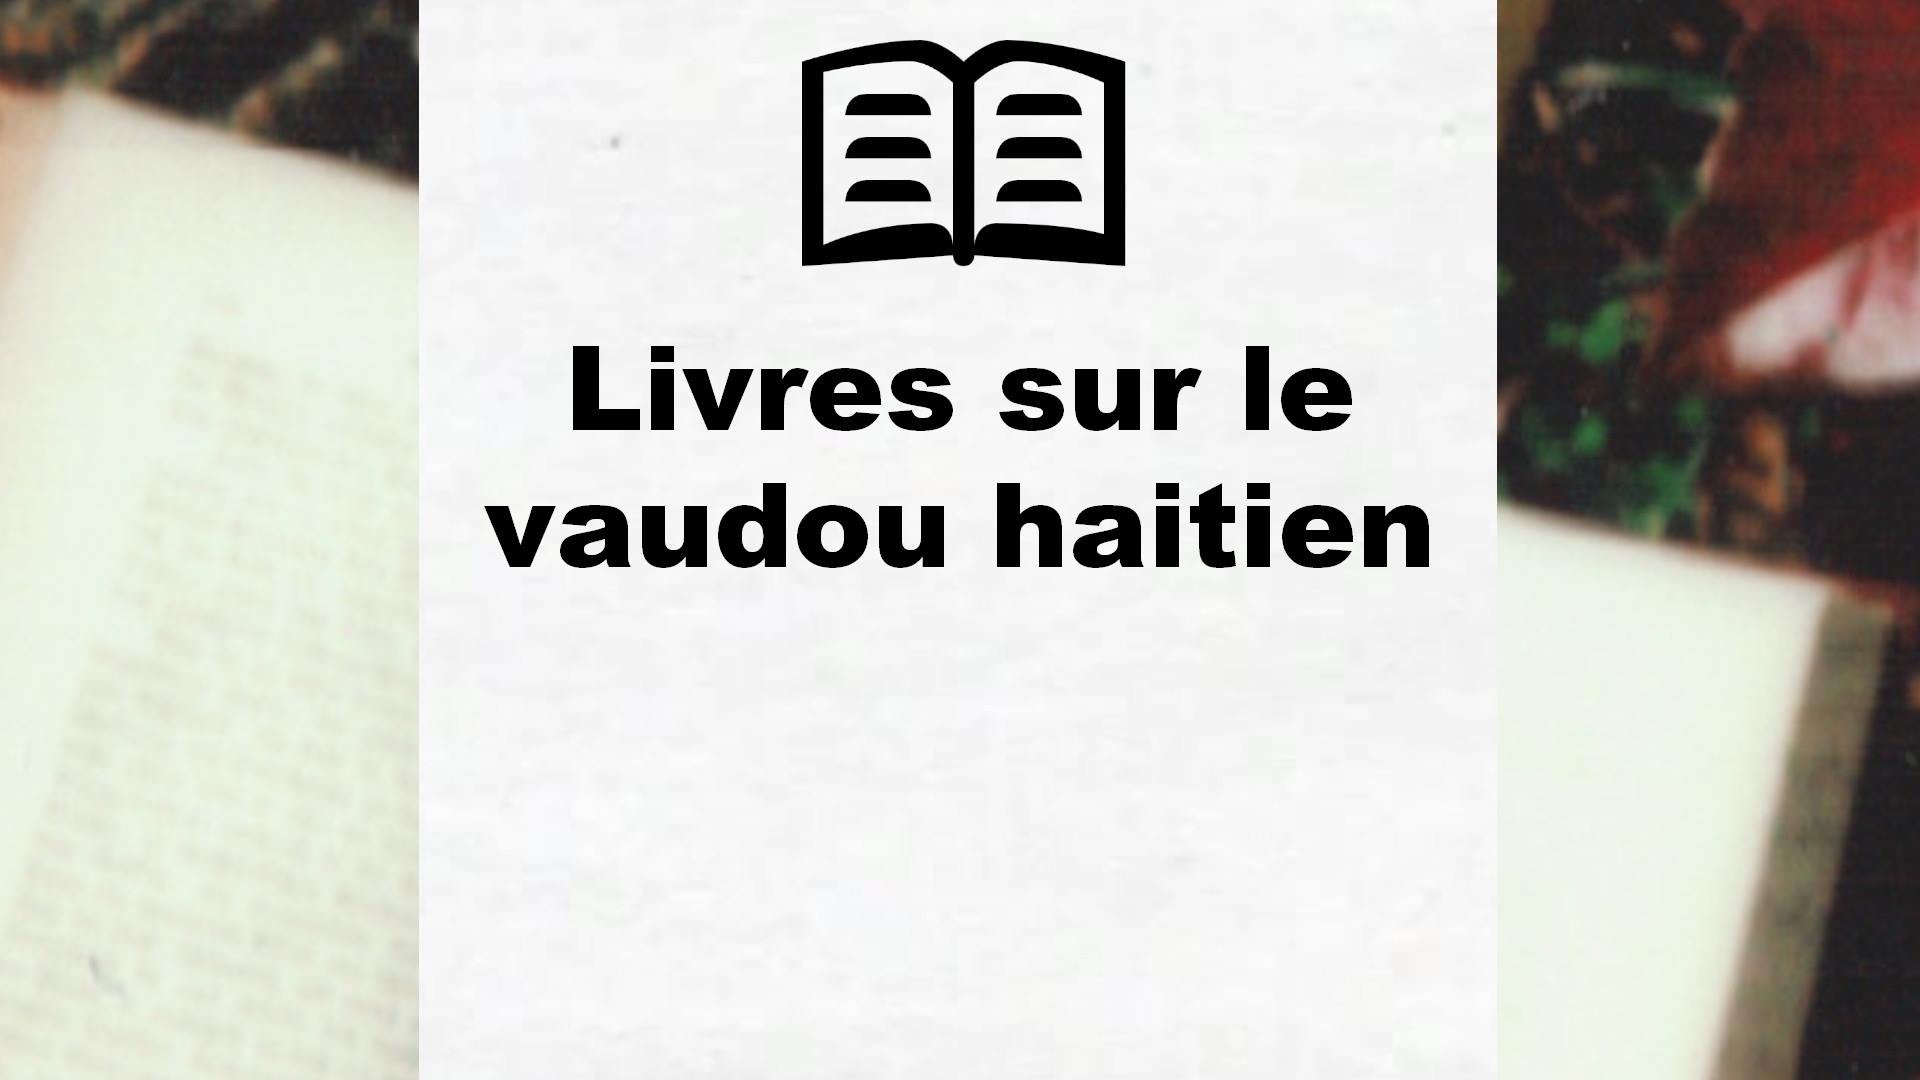 Livres sur le vaudou haitien